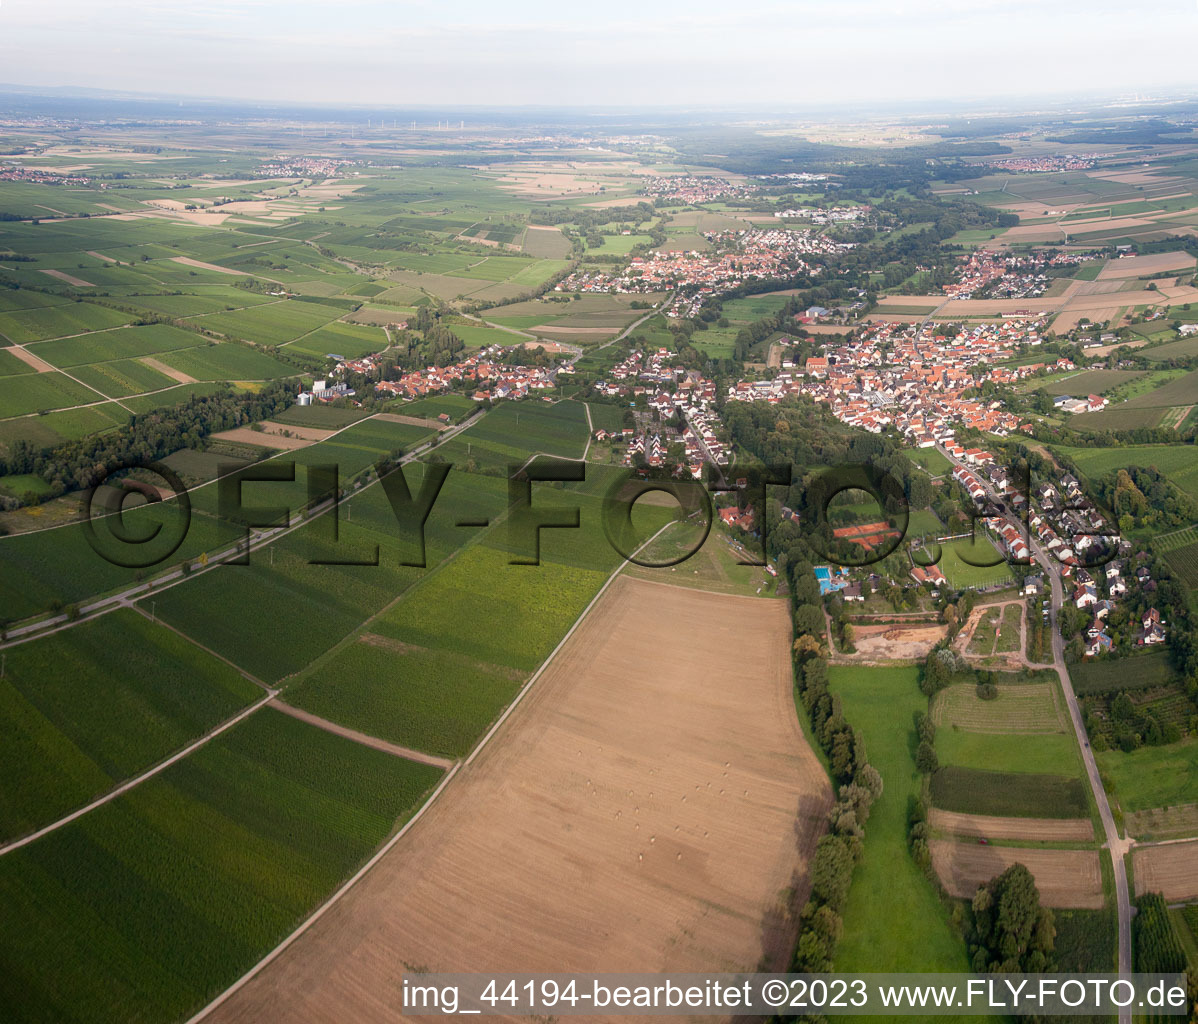 District Klingen in Heuchelheim-Klingen in the state Rhineland-Palatinate, Germany from a drone